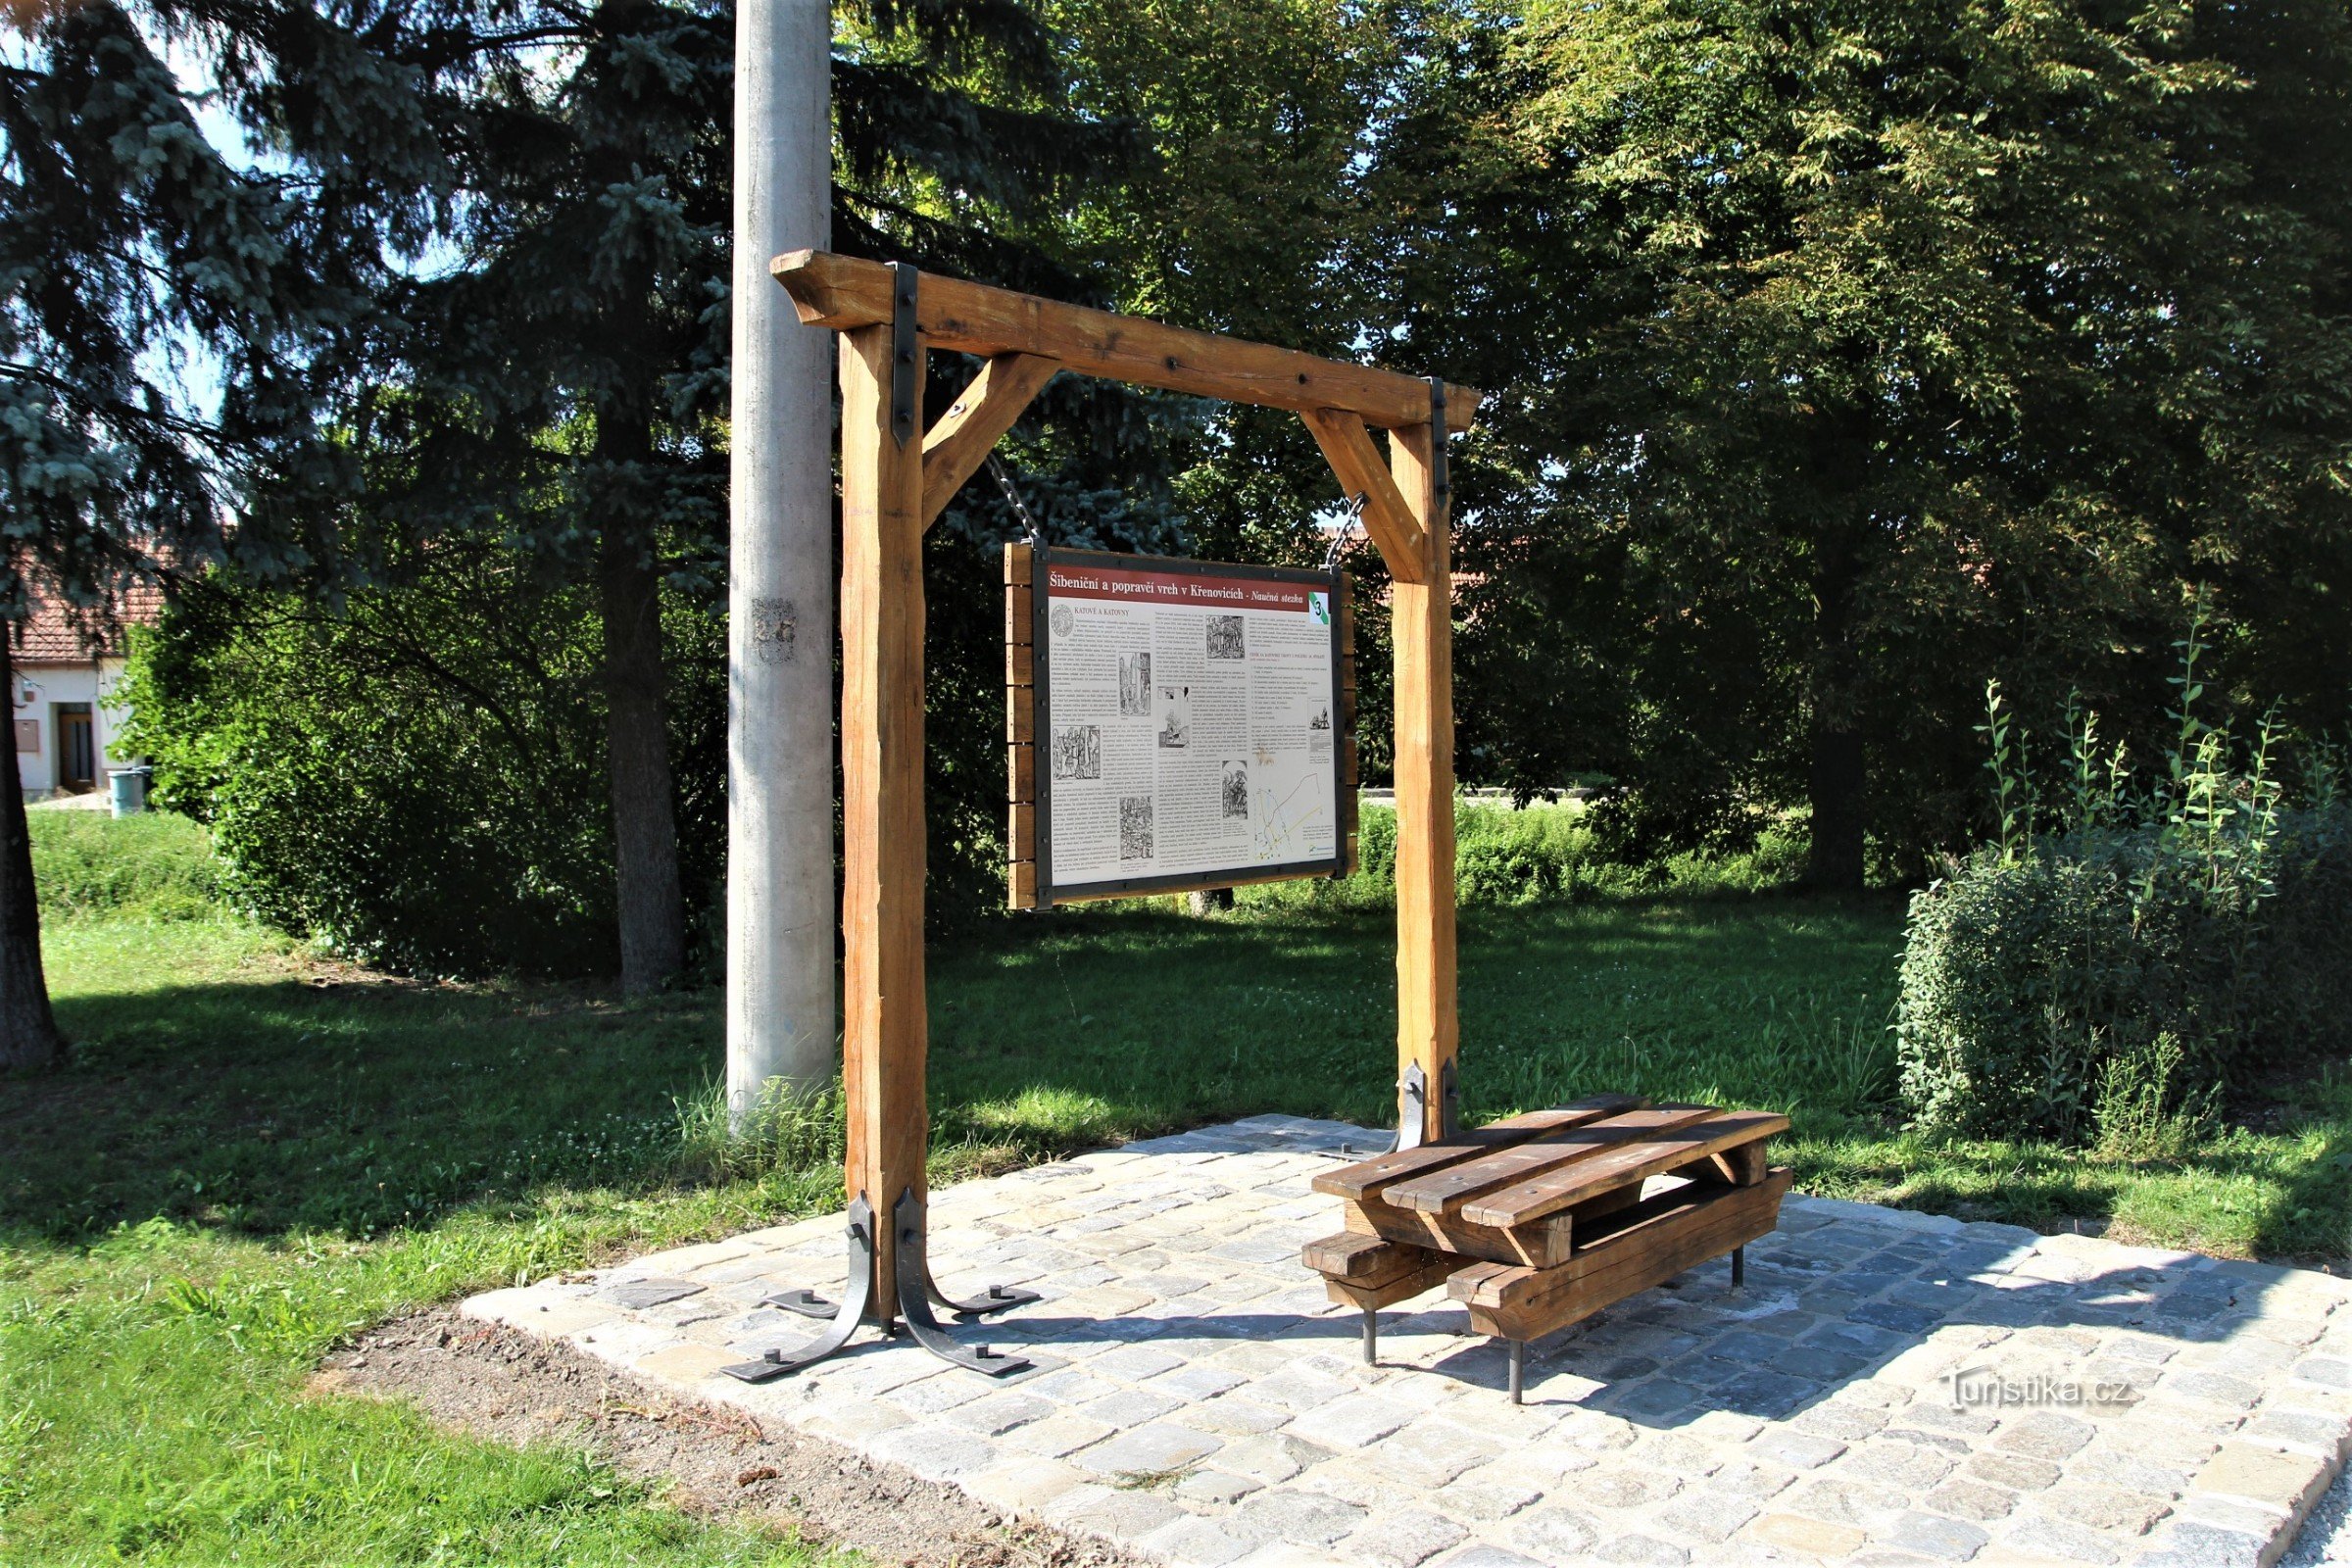 Η τρίτη στάση του εκπαιδευτικού μονοπατιού είναι στην αρχή της οδού Mlýnská